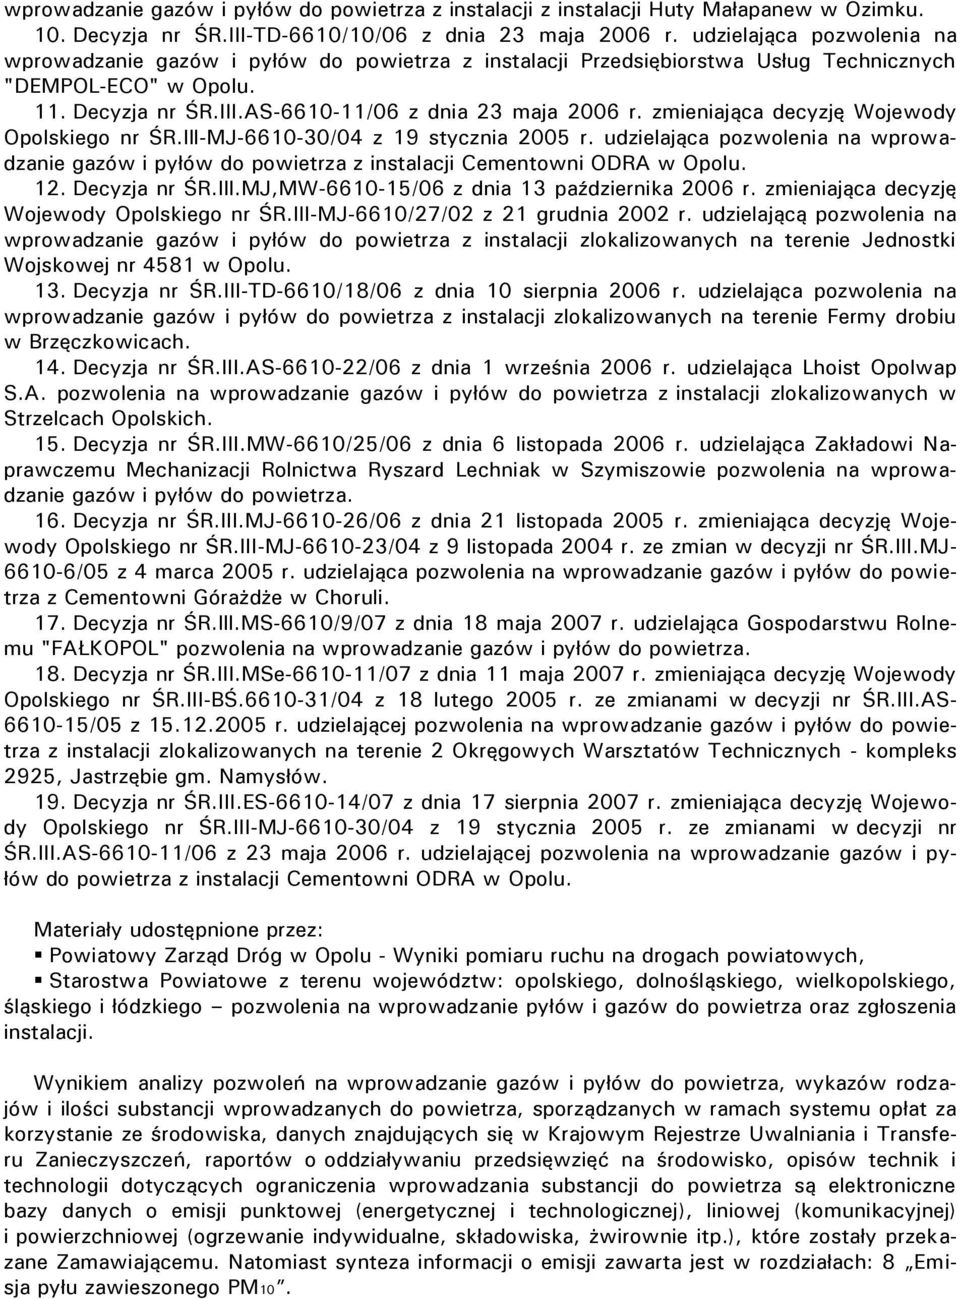 zmieniająca decyzję Wojewody Opolskiego nr ŚR.Ill-MJ-6610-30/04 z 19 stycznia 2005 r. udzielająca pozwolenia na wprowadzanie gazów i pyłów do powietrza z instalacji Cementowni ODRA w Opolu. 12.